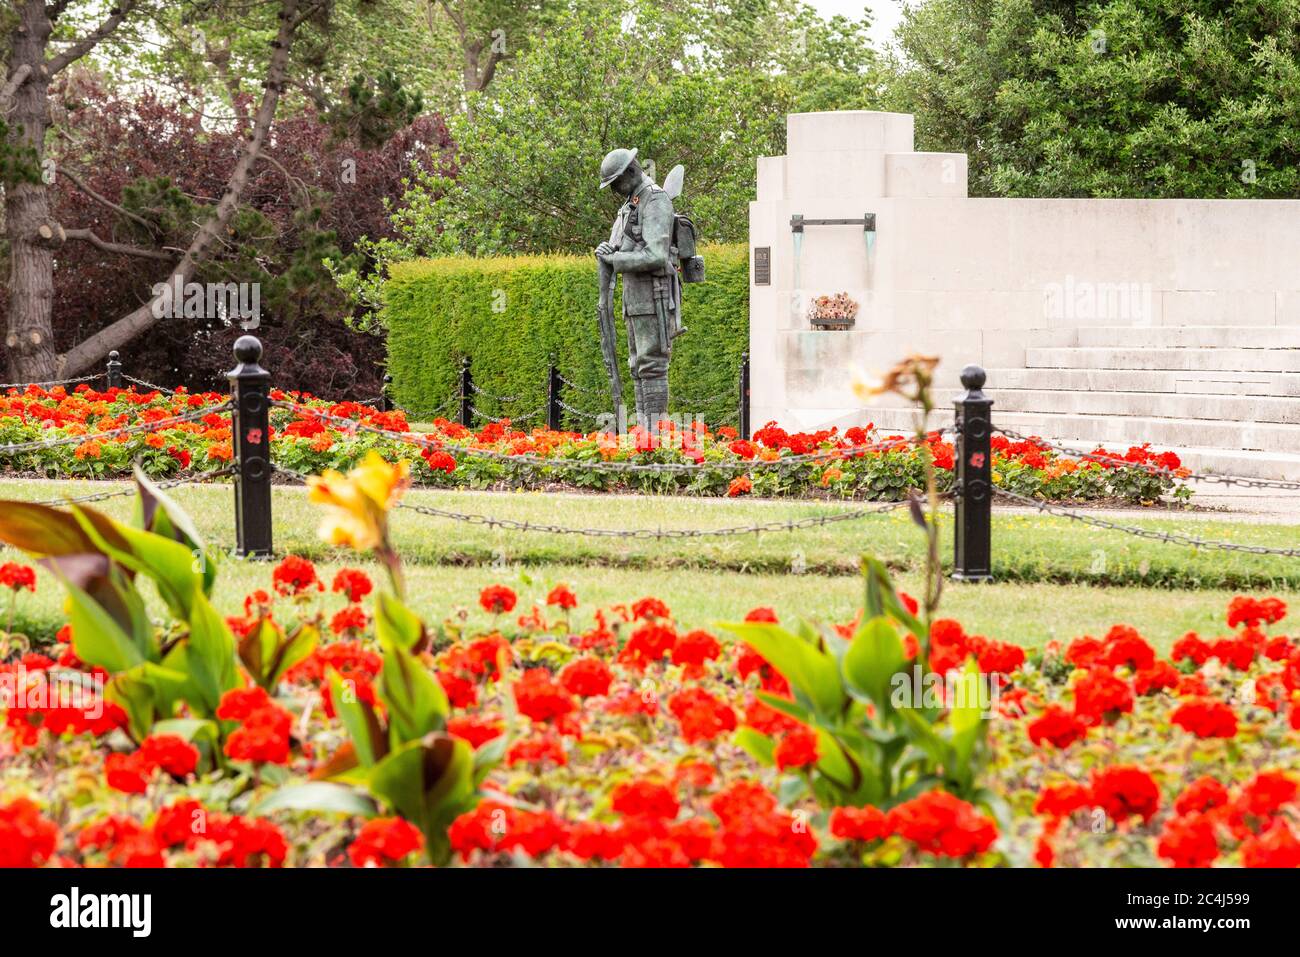 Monumento ai caduti di Southend Cenotaph con statua in bronzo di un soldato britannico ‘Tommy’ di fronte al monumento alla guerra. Fiori rossi luminosi. Forze armate giorno 2020 Foto Stock